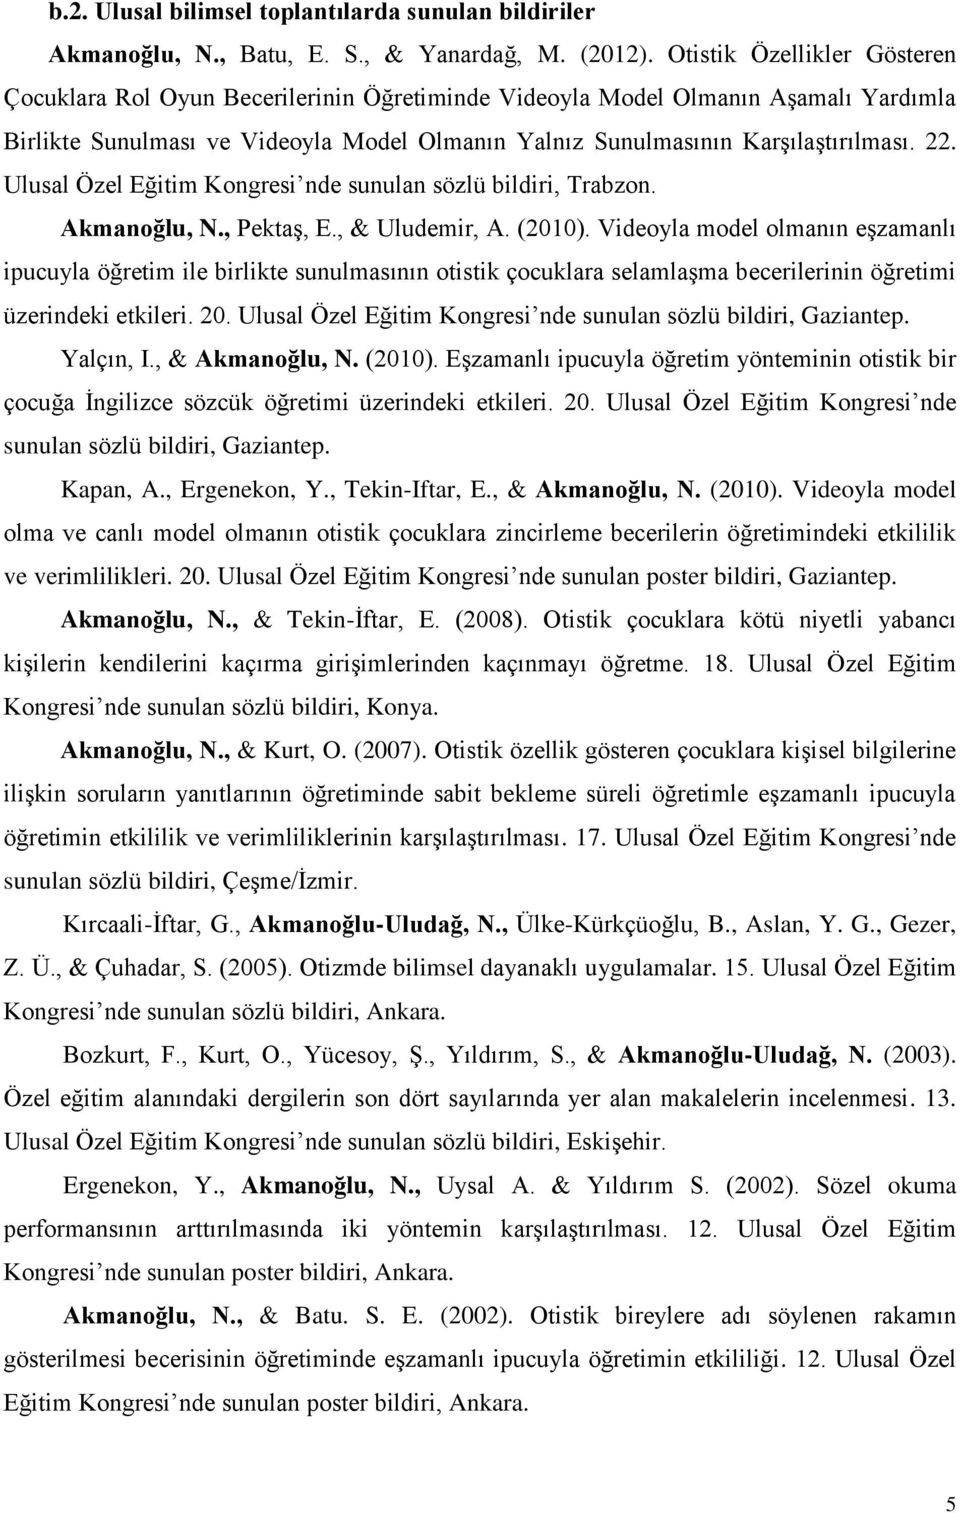 Ulusal Özel Eğitim Kongresi nde sunulan sözlü bildiri, Trabzon. Akmanoğlu, N., Pektaş, E., & Uludemir, A. (2010).